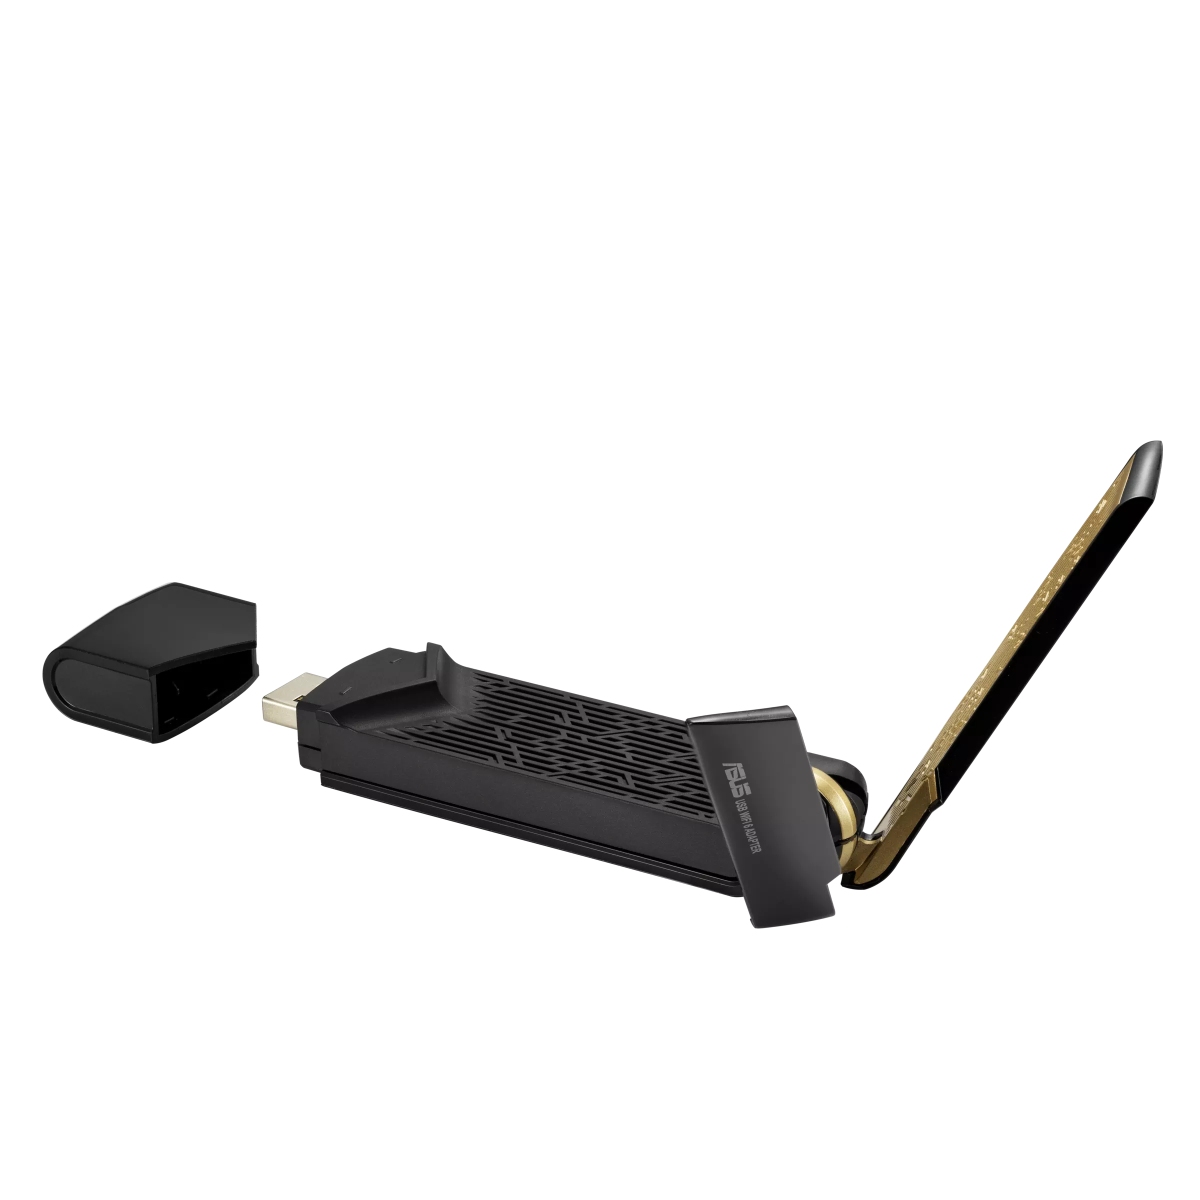 Obrázek ASUS USB-AX56 Dual Band wireless AX1800,USB client